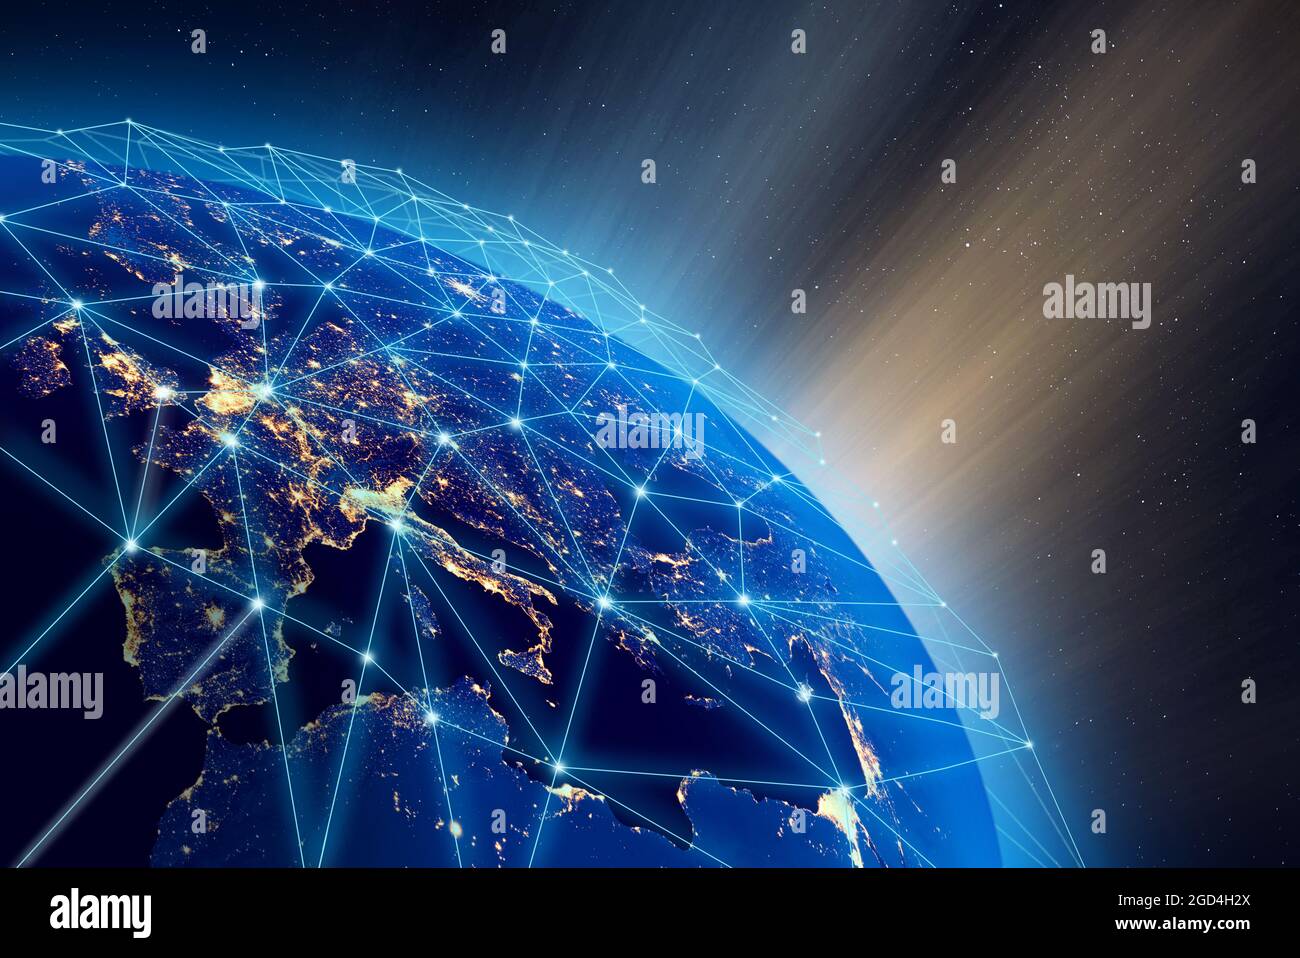 Planet Erde, Stadtlichter und weltweite digitale Netzwerkinfrastruktur. Einige Elemente des Bildes, die von der NASA eingerichtet wurden. Stockfoto